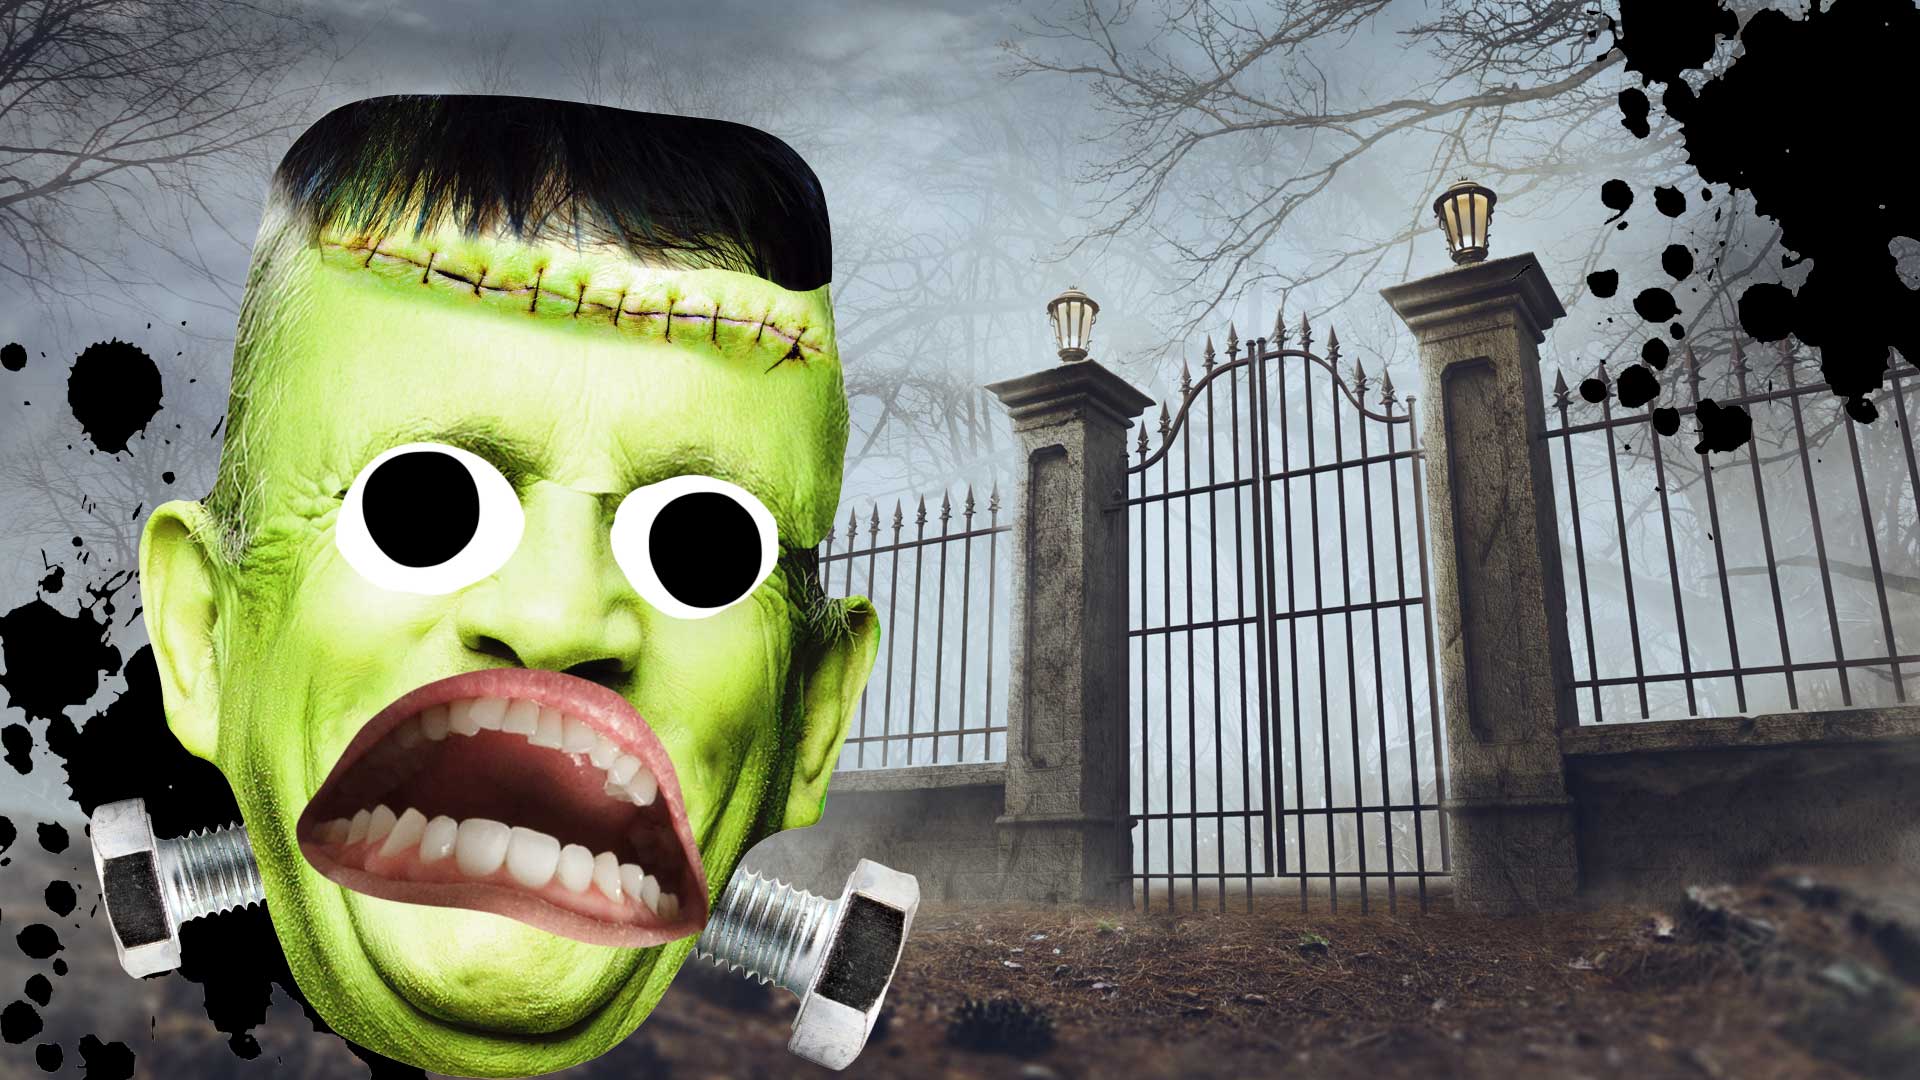 Frankenstein's monster near a graveyard